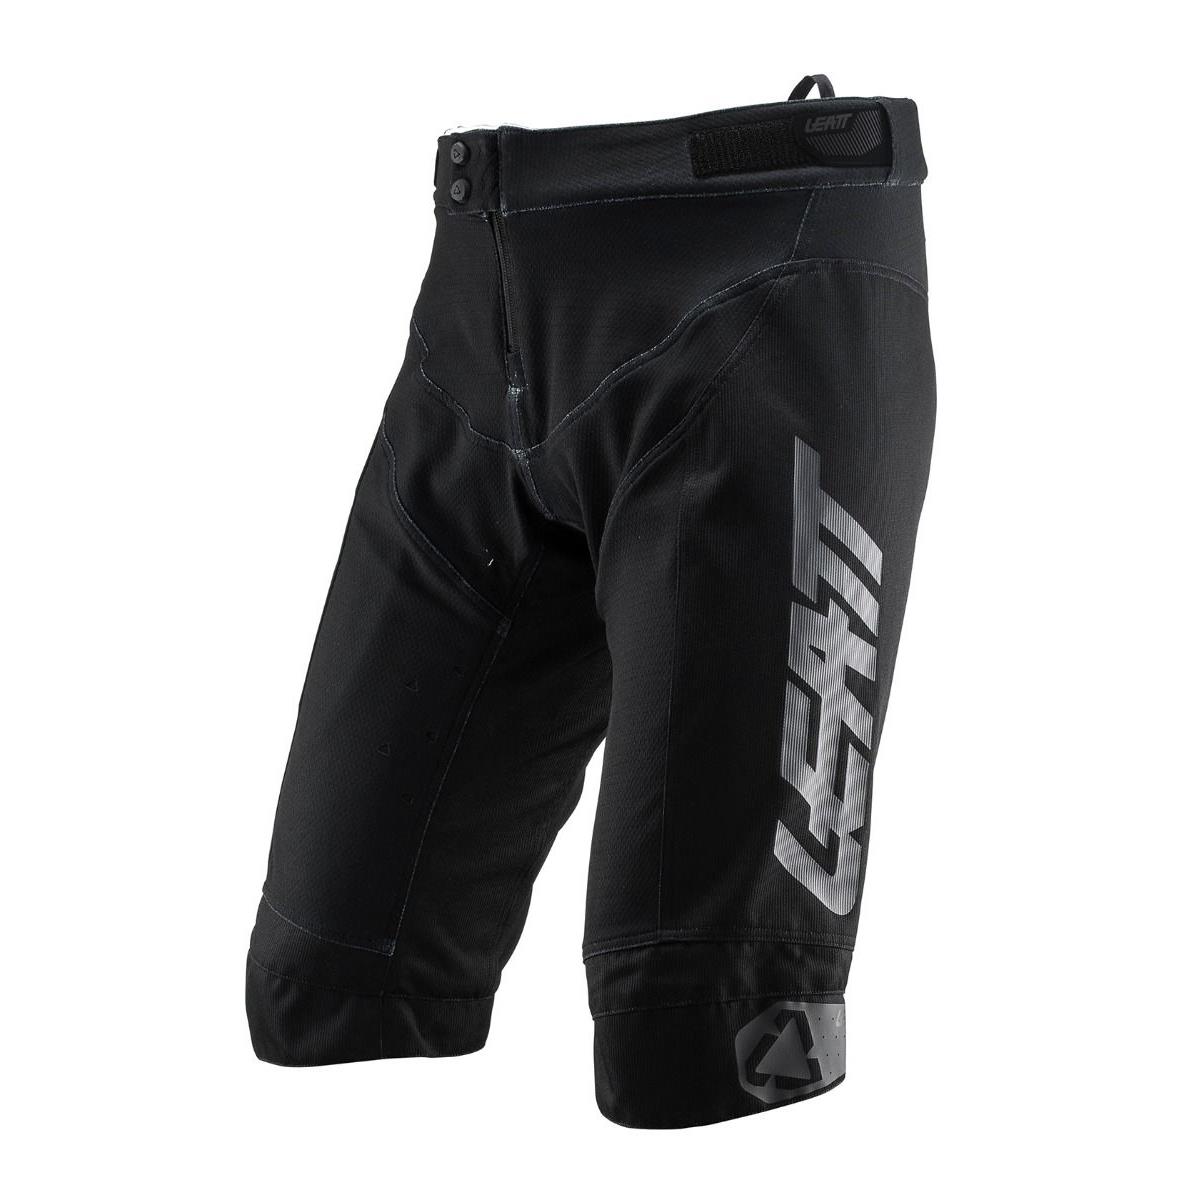 Leatt Downhill Shorts DBX 4.0 Black